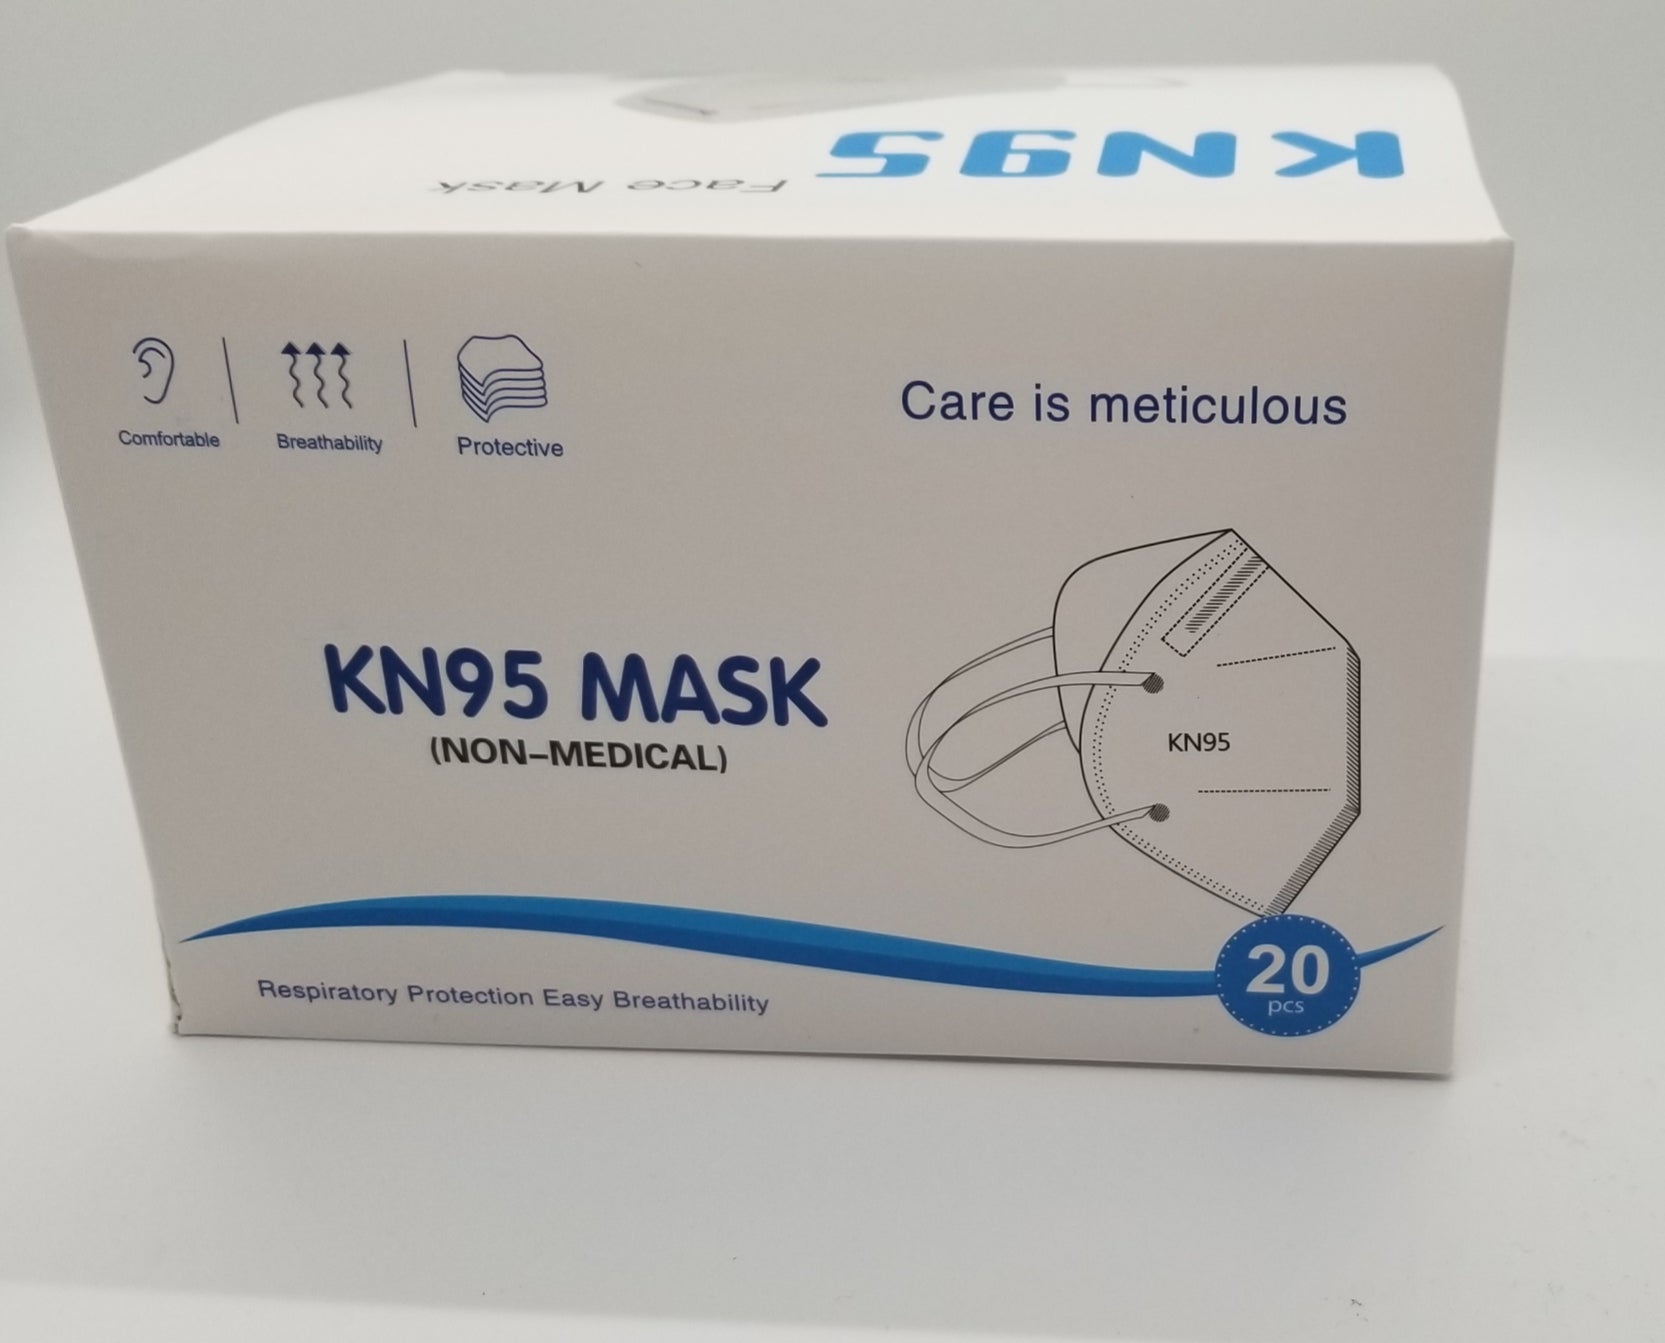 Protective Facial Gear (MASK) (GLOVES)